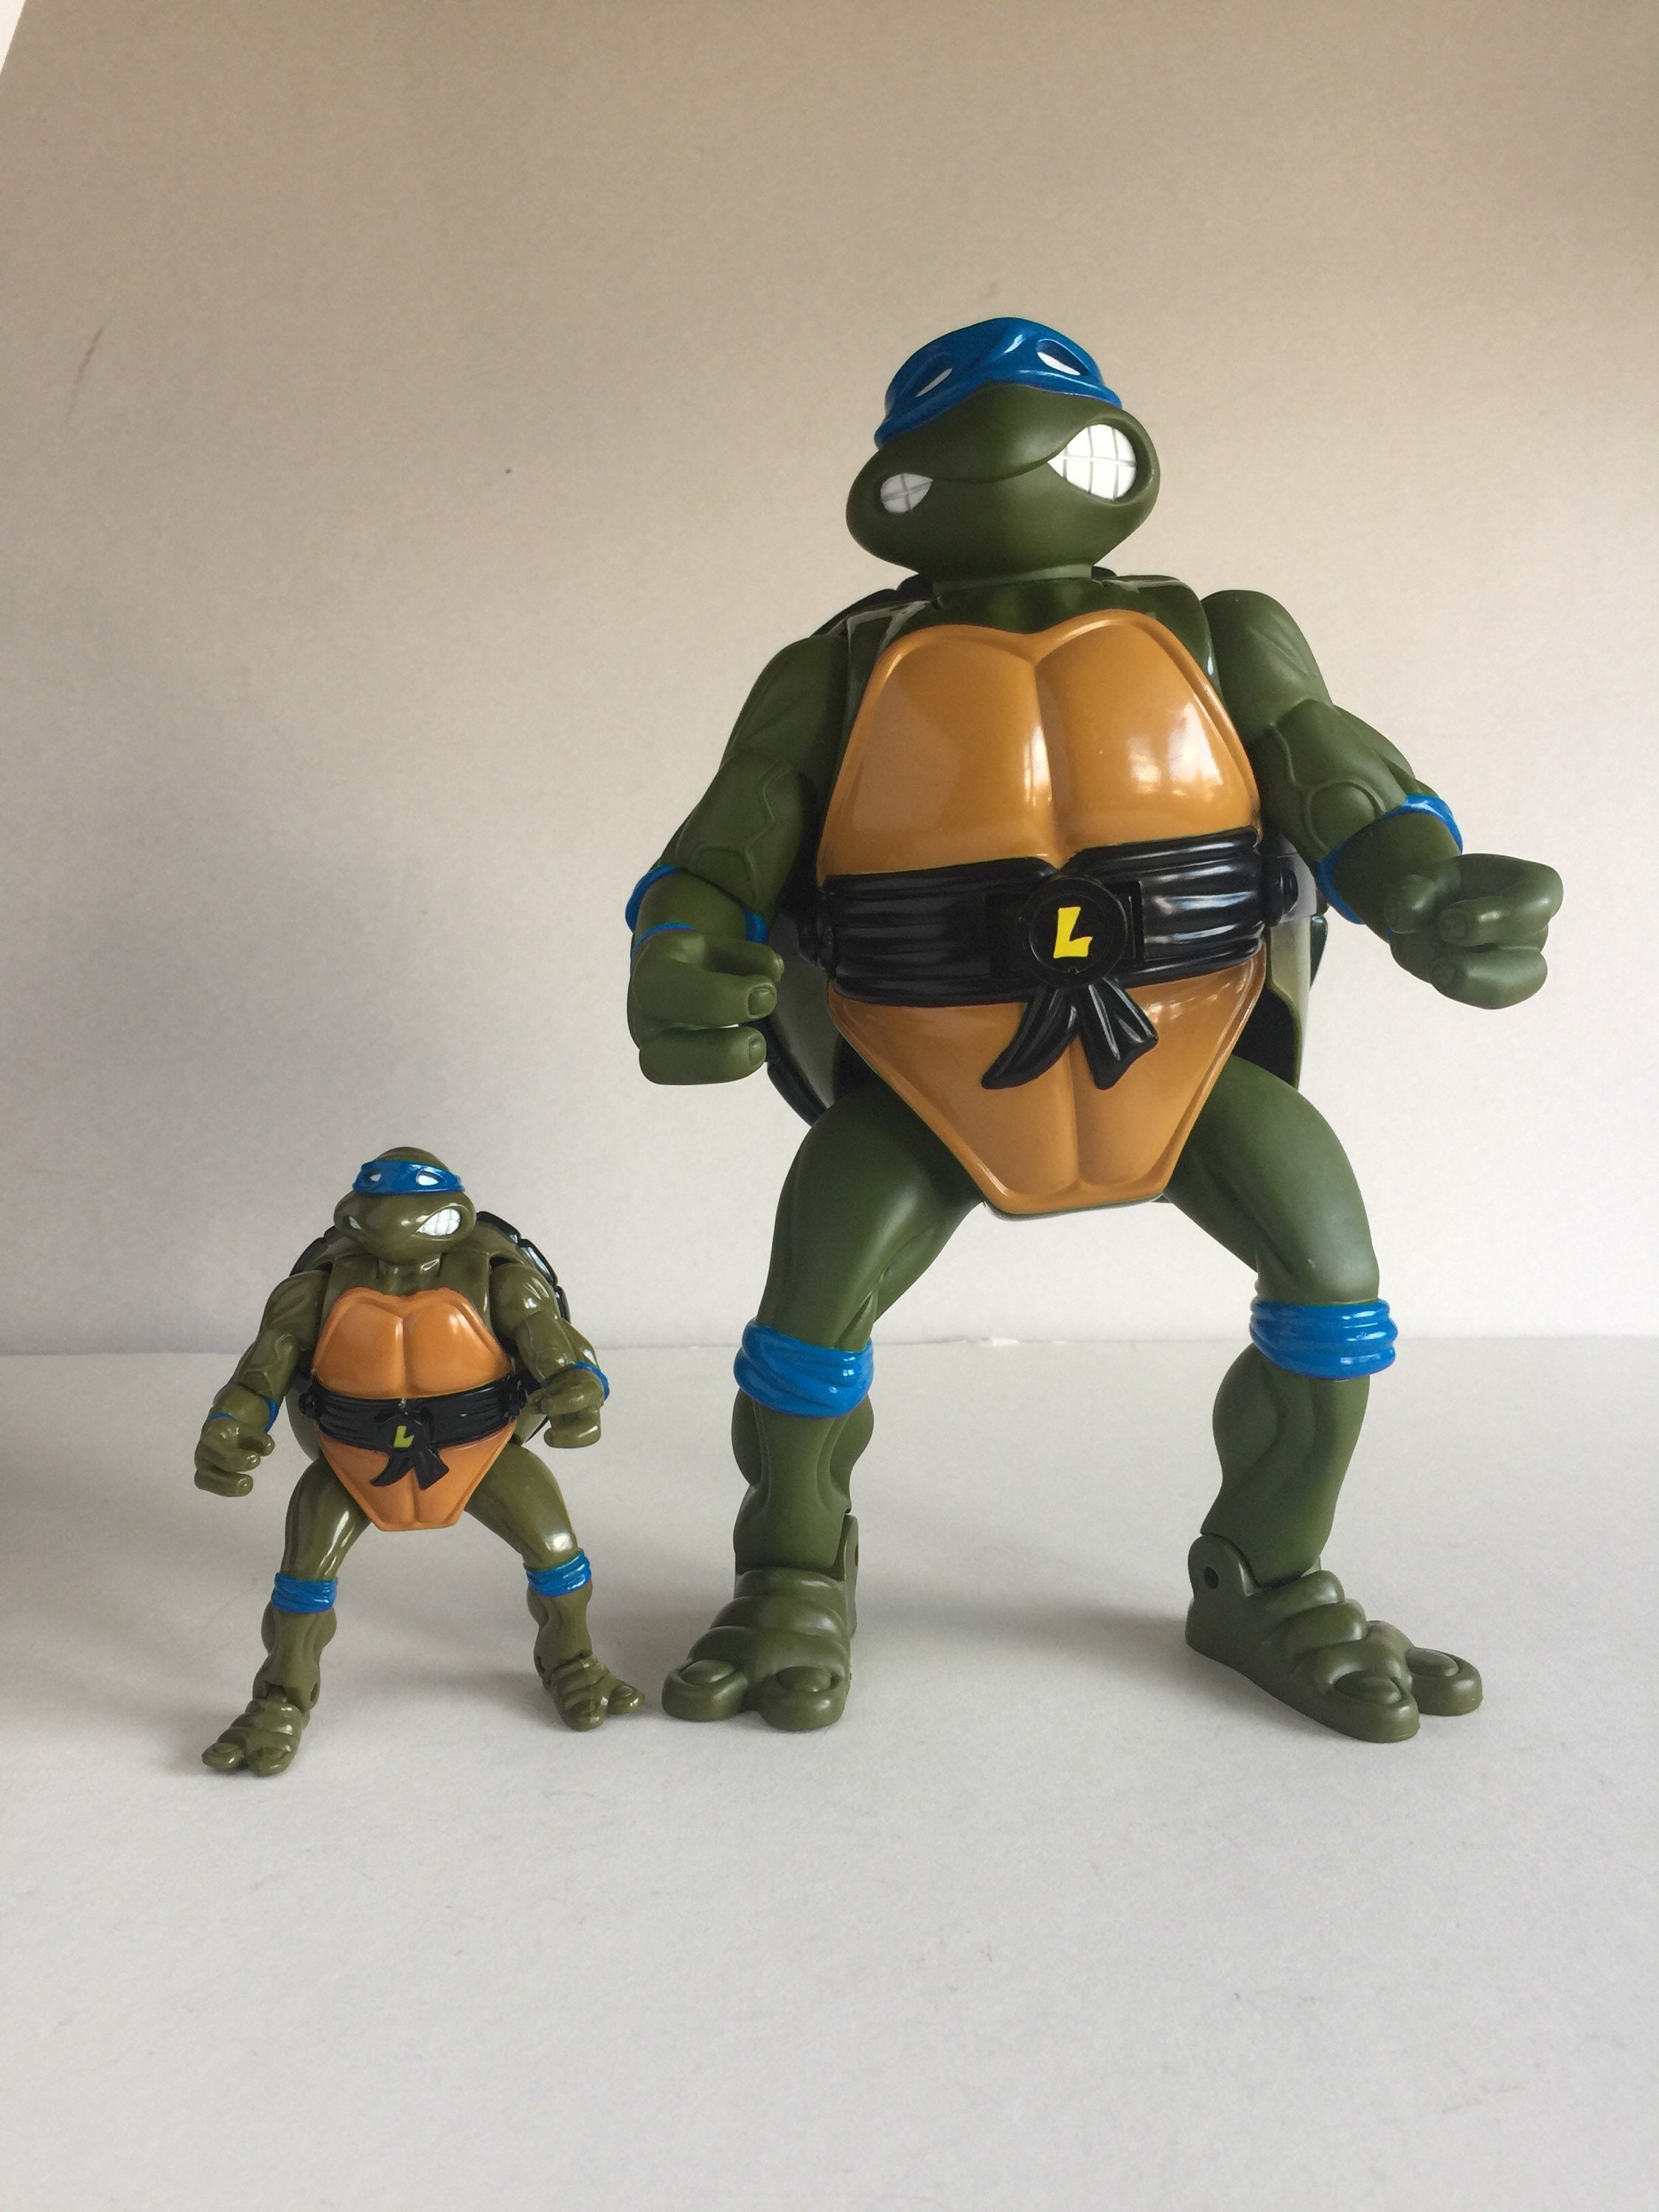  Teenage Mutant Ninja Turtles: 12” Original Classic Leonardo  Giant Figure by Playmates Toys : Toys & Games